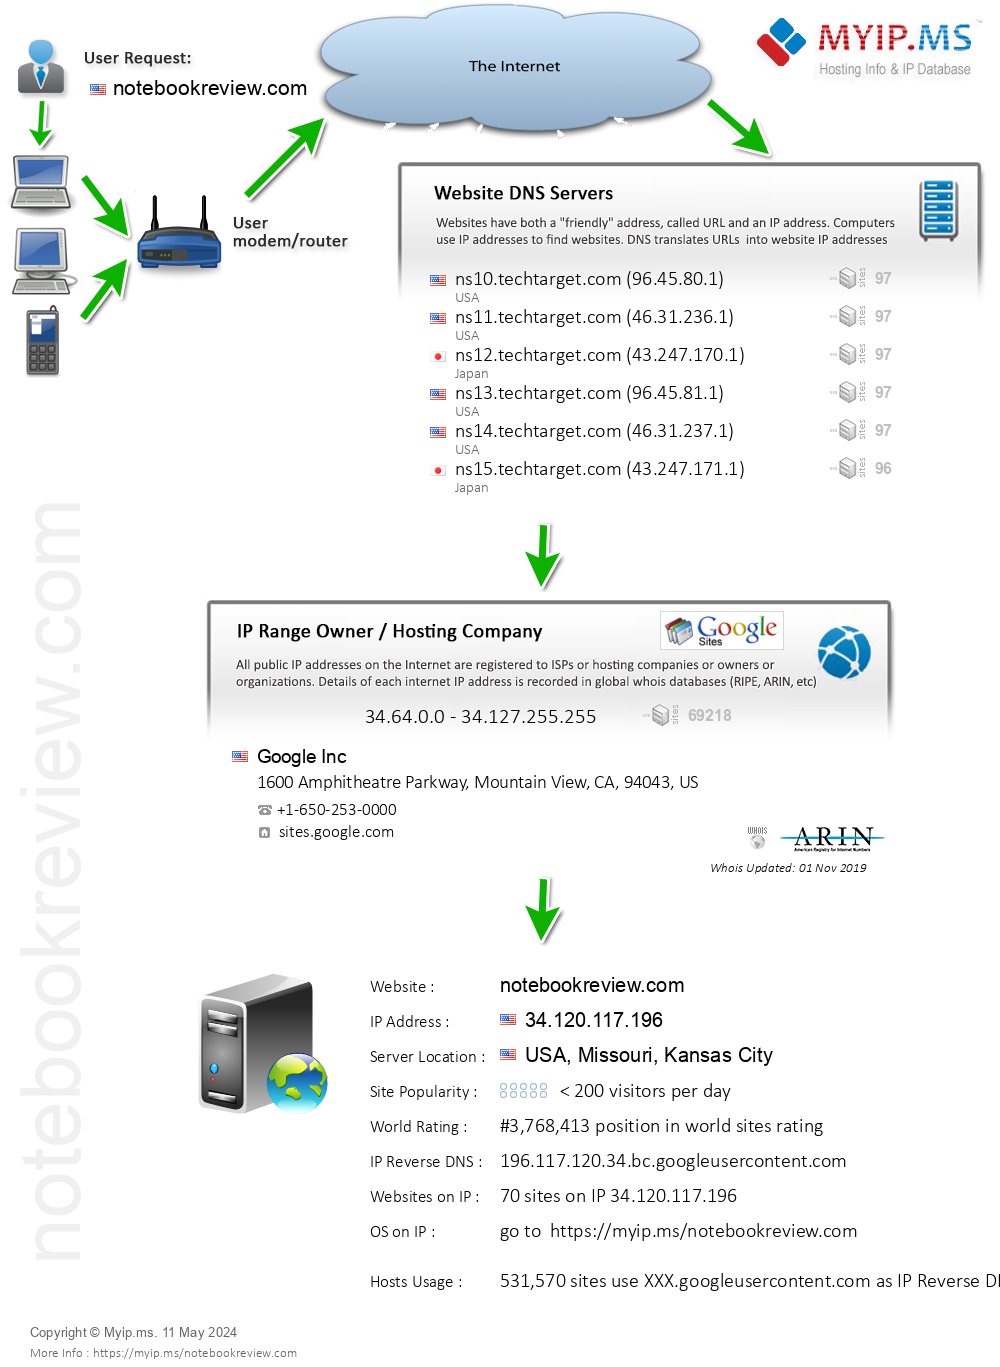 Notebookreview.com - Website Hosting Visual IP Diagram